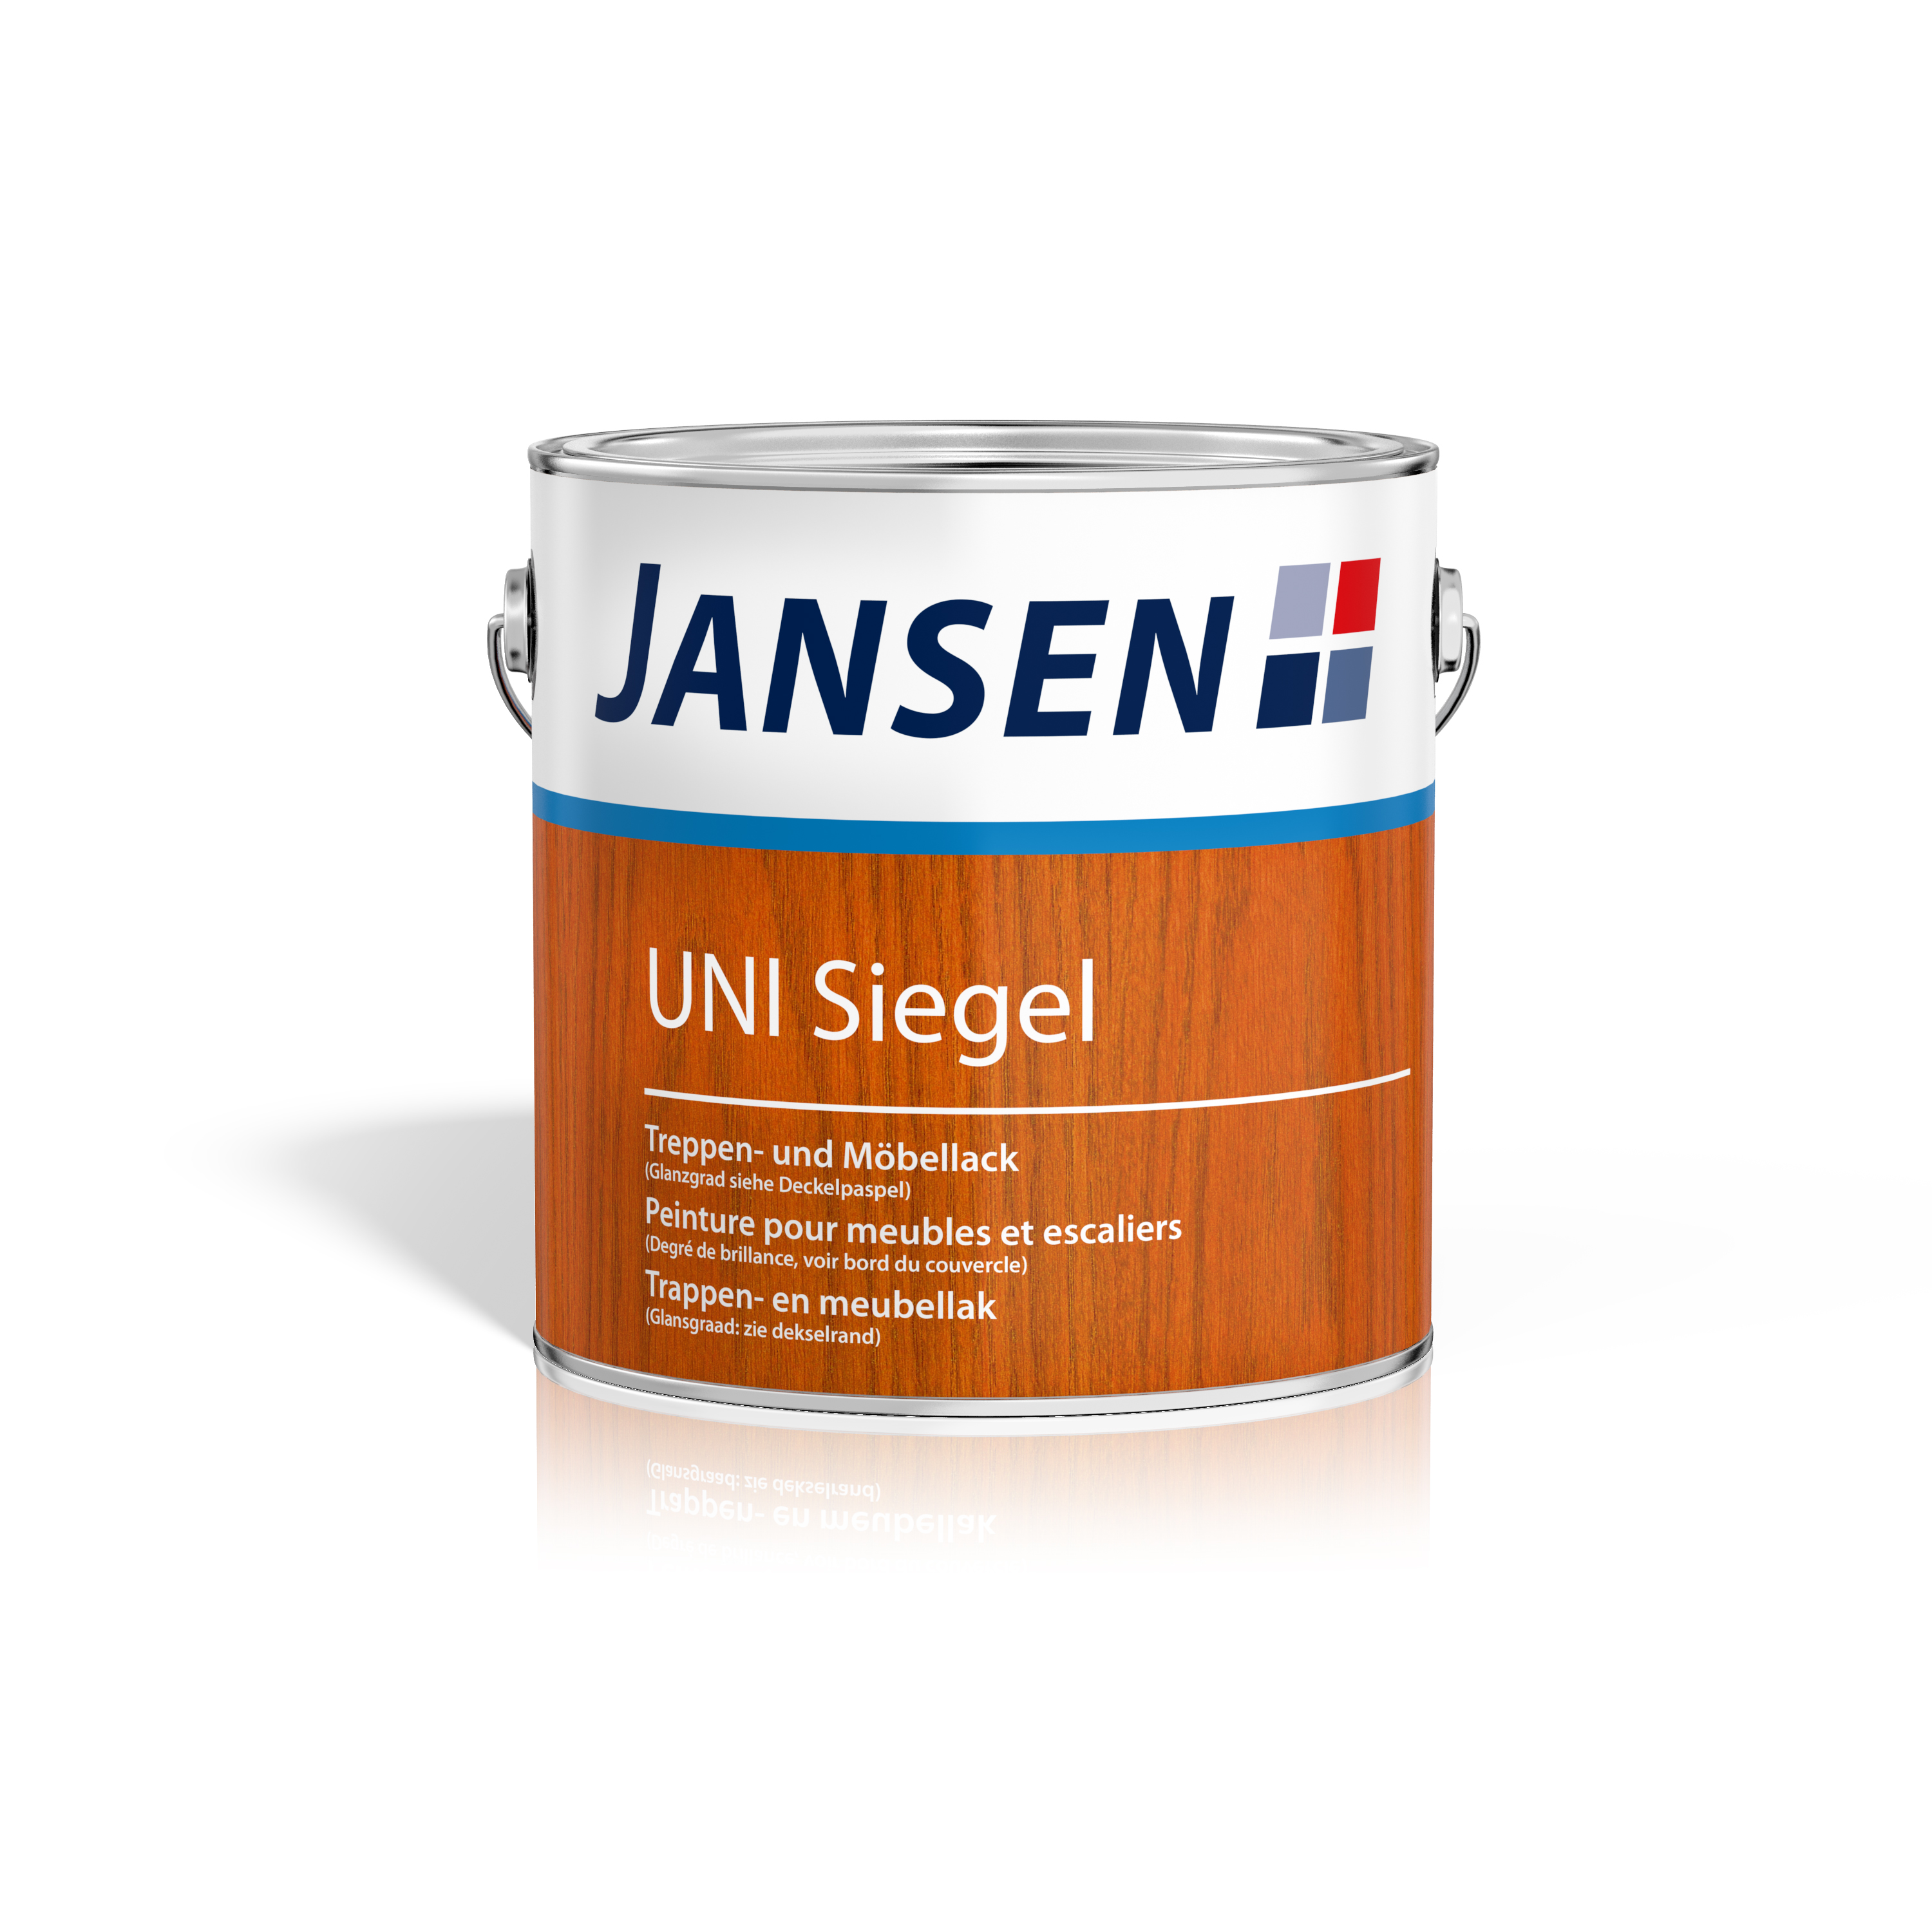 Jansen Uni Siegel